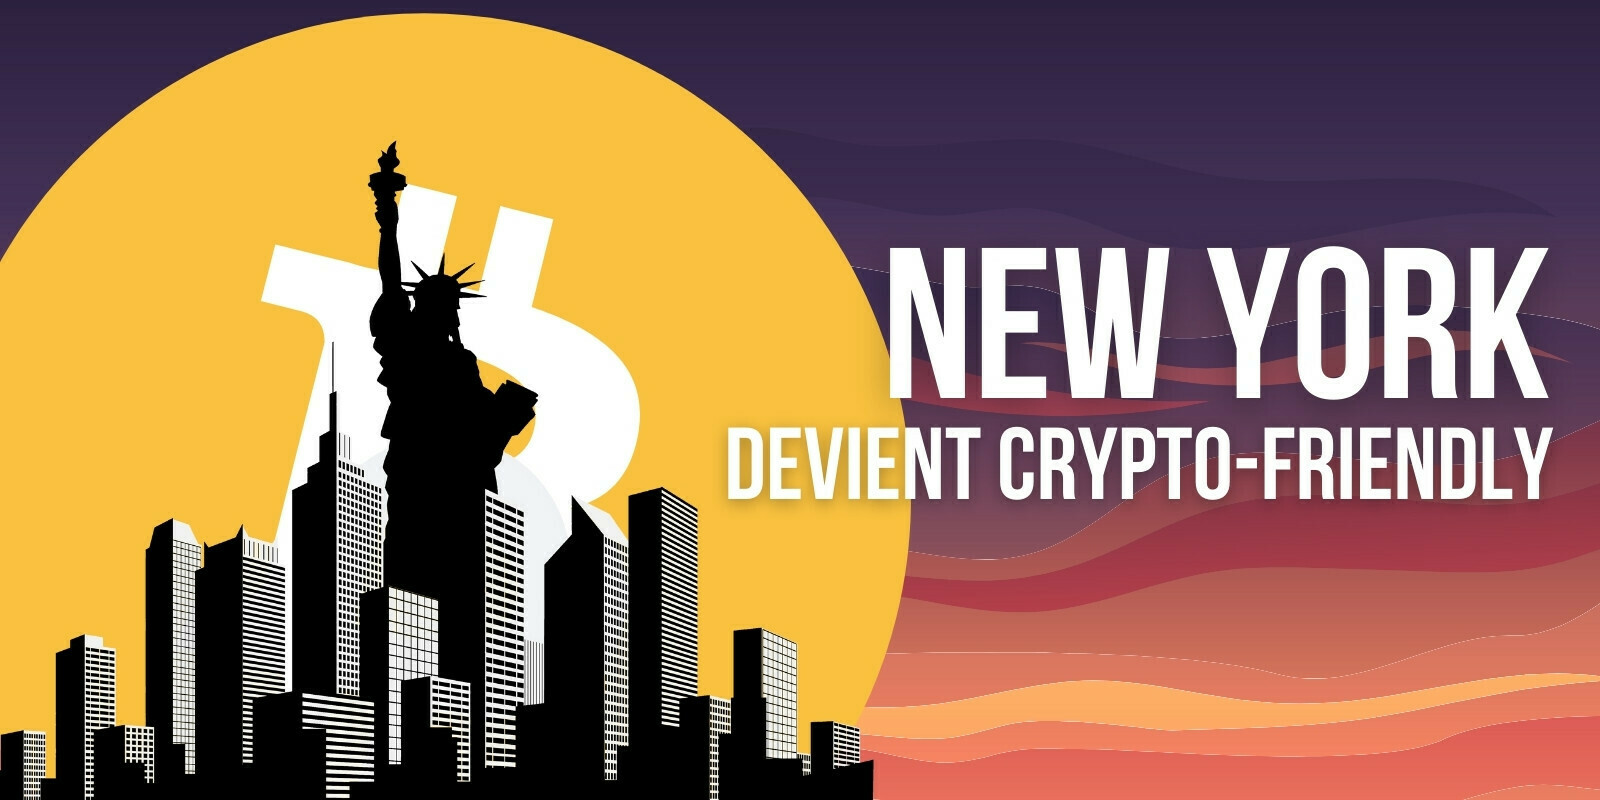 Le maire de New York veut favoriser la croissance de Bitcoin (BTC) et des cryptomonnaies dans sa ville